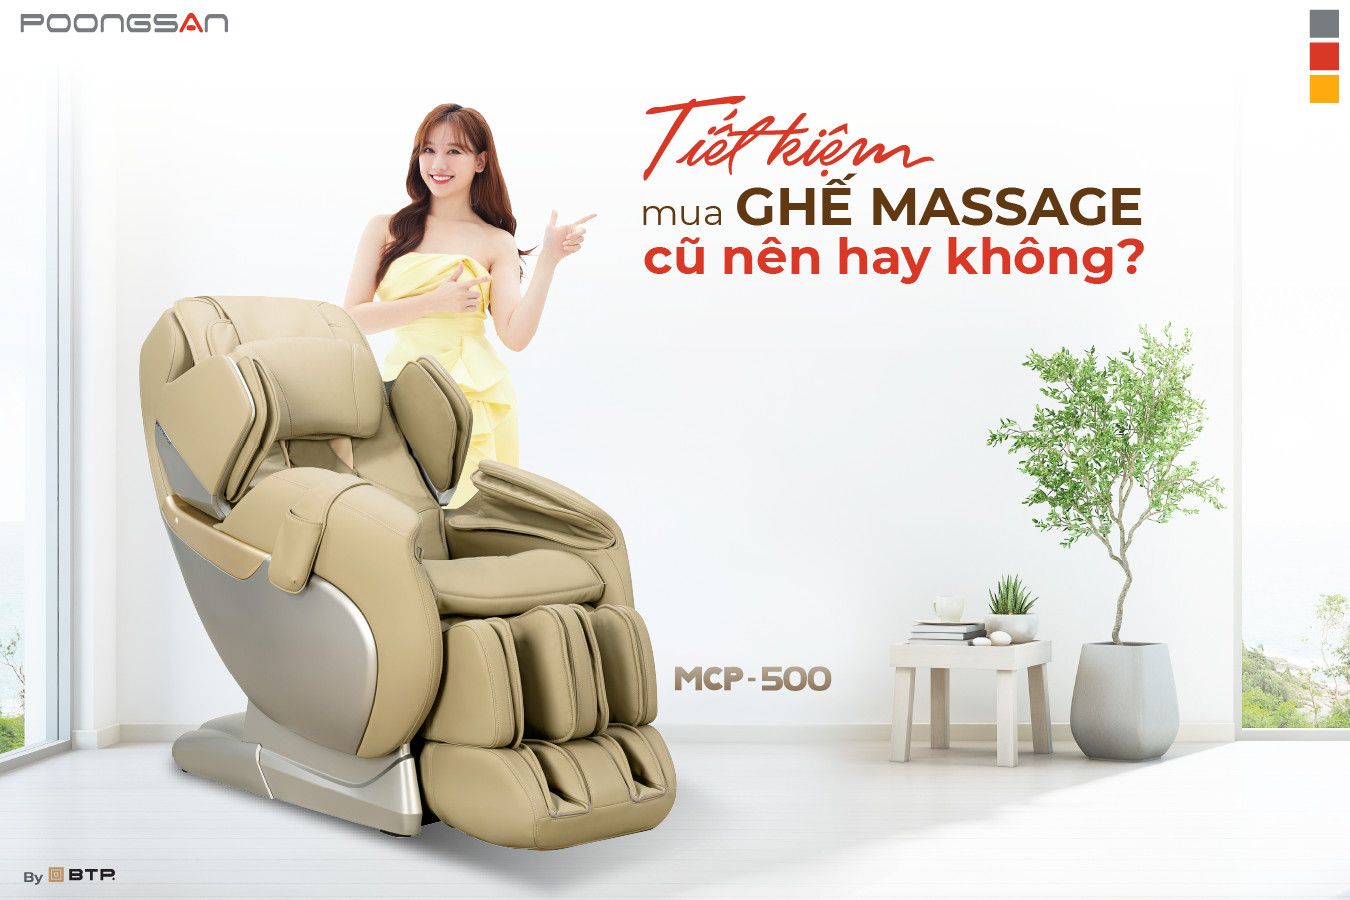 Tiết kiệm mua ghế massage cũ, nên hay không?